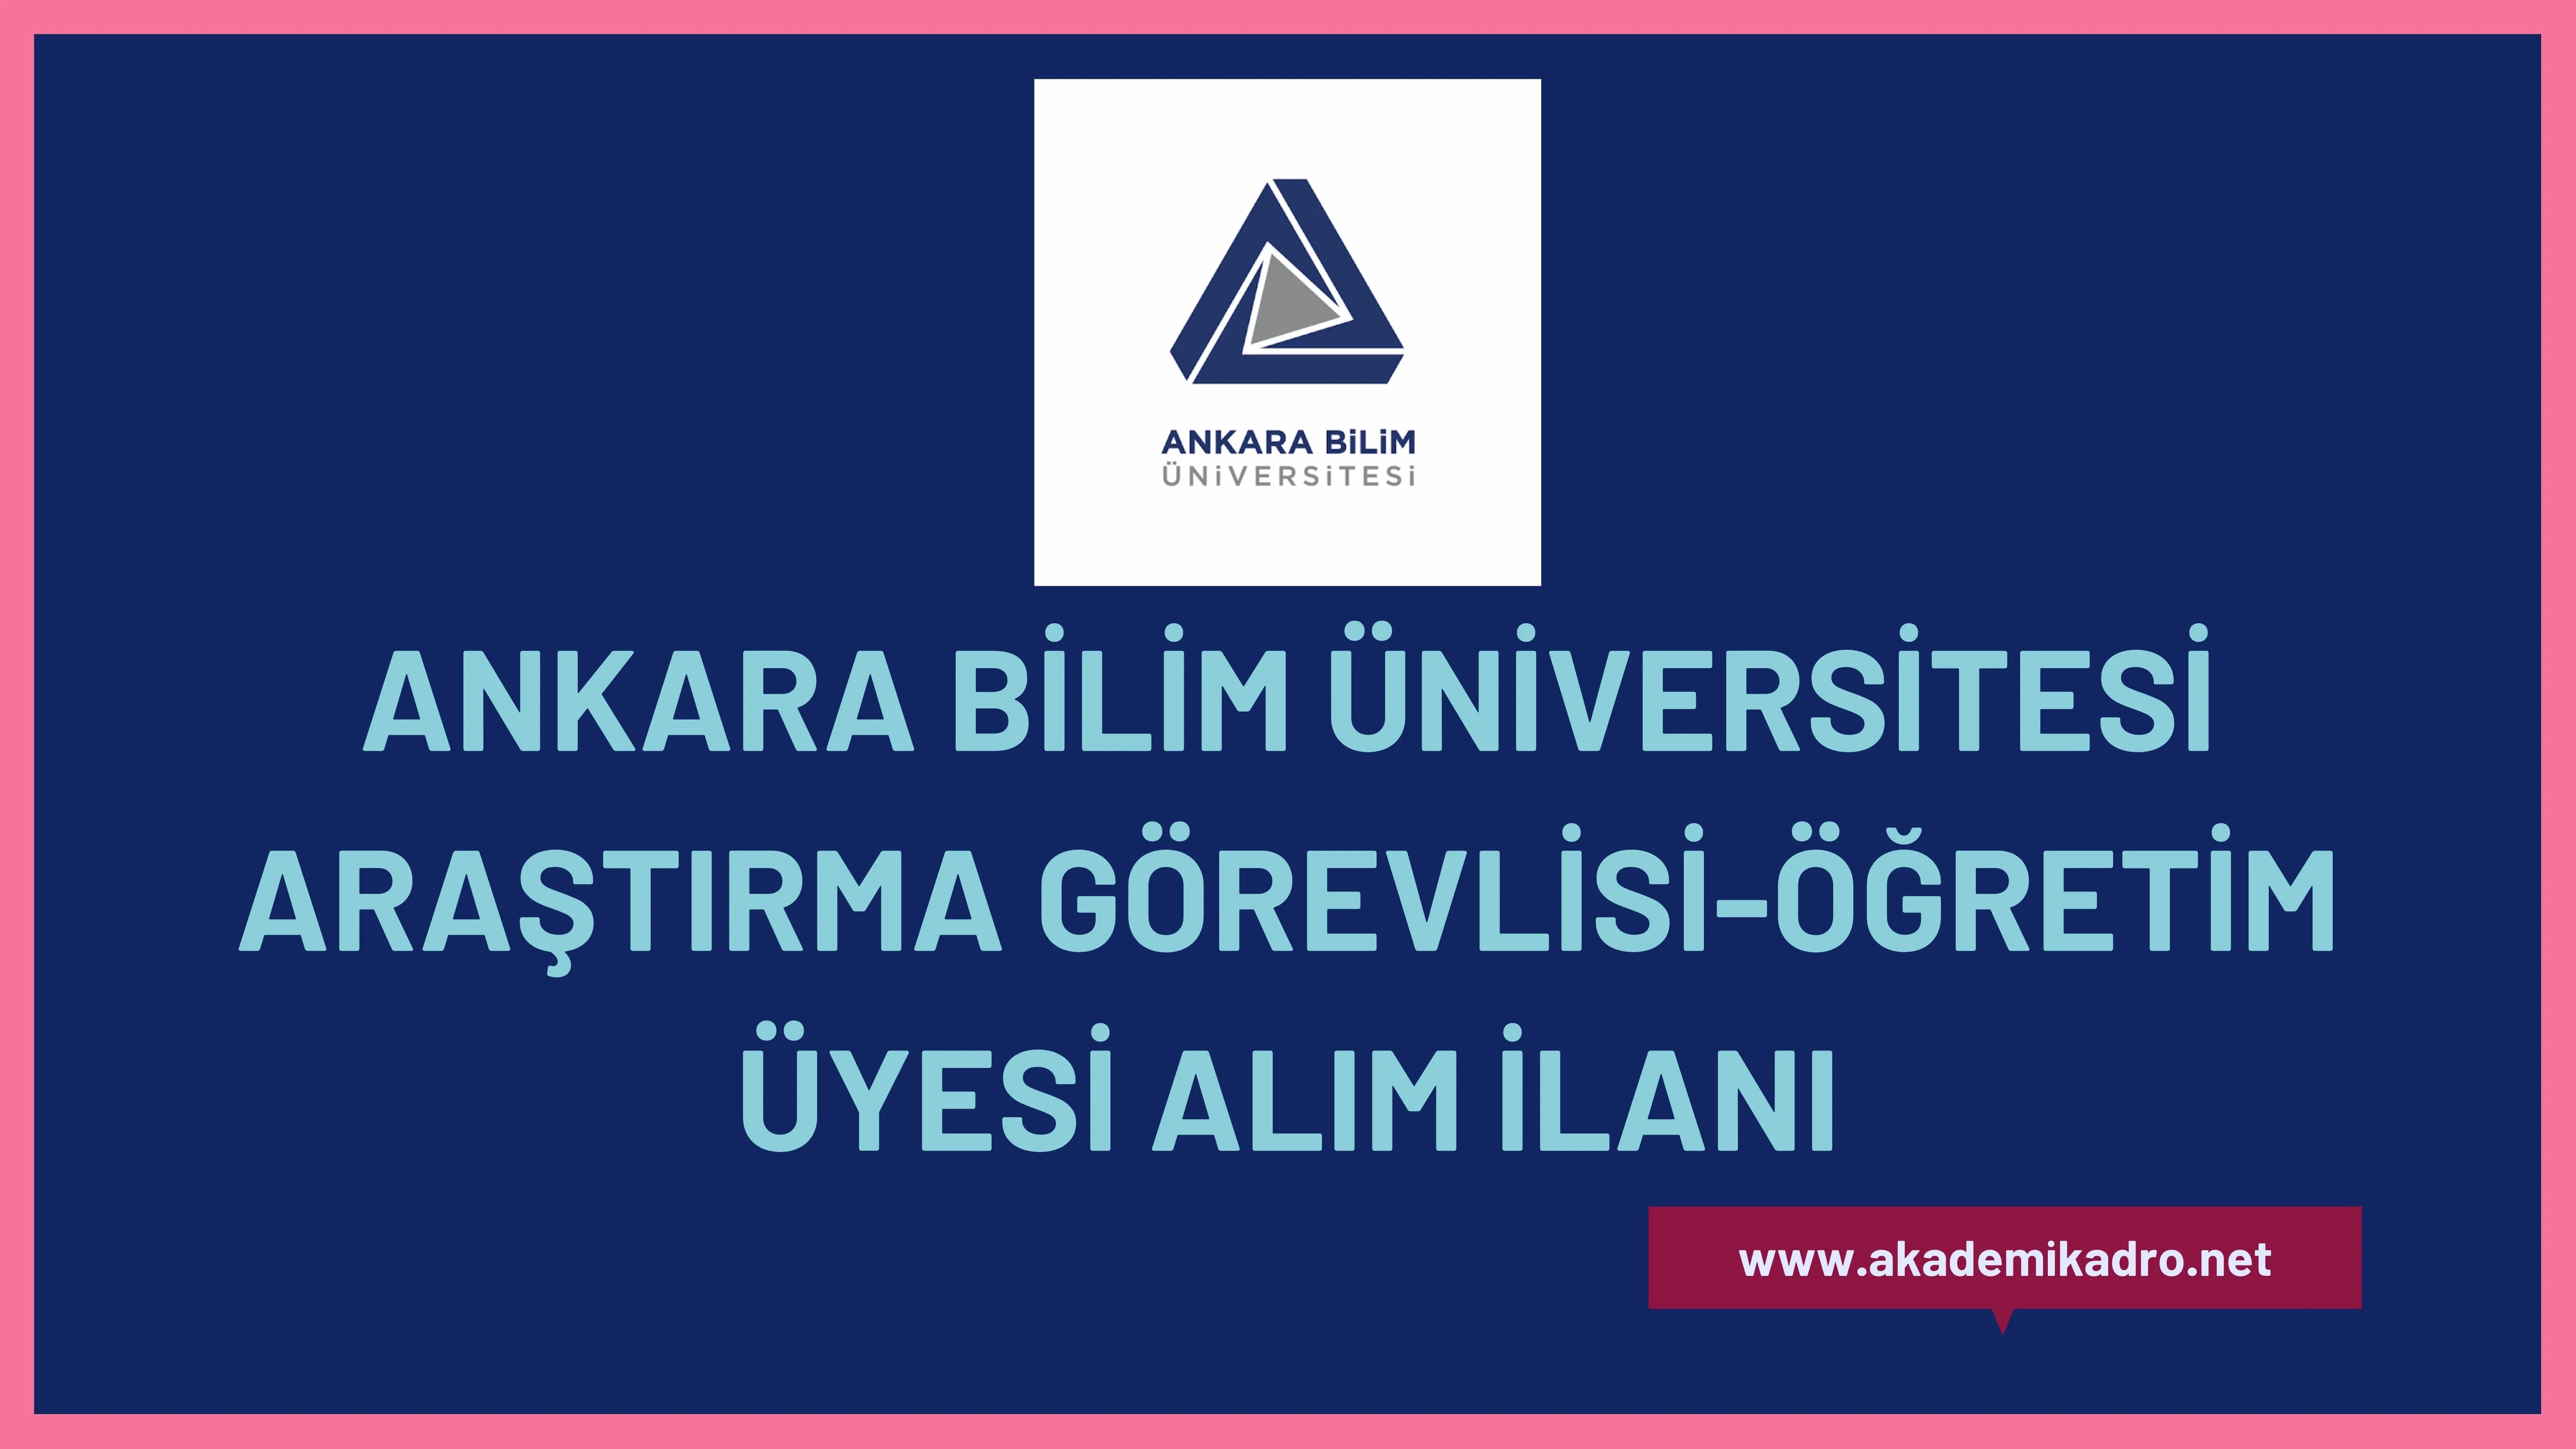 Ankara Bilim Üniversitesi 5 Araştırma görevlisi ve 5 öğretim üyesi alacak.